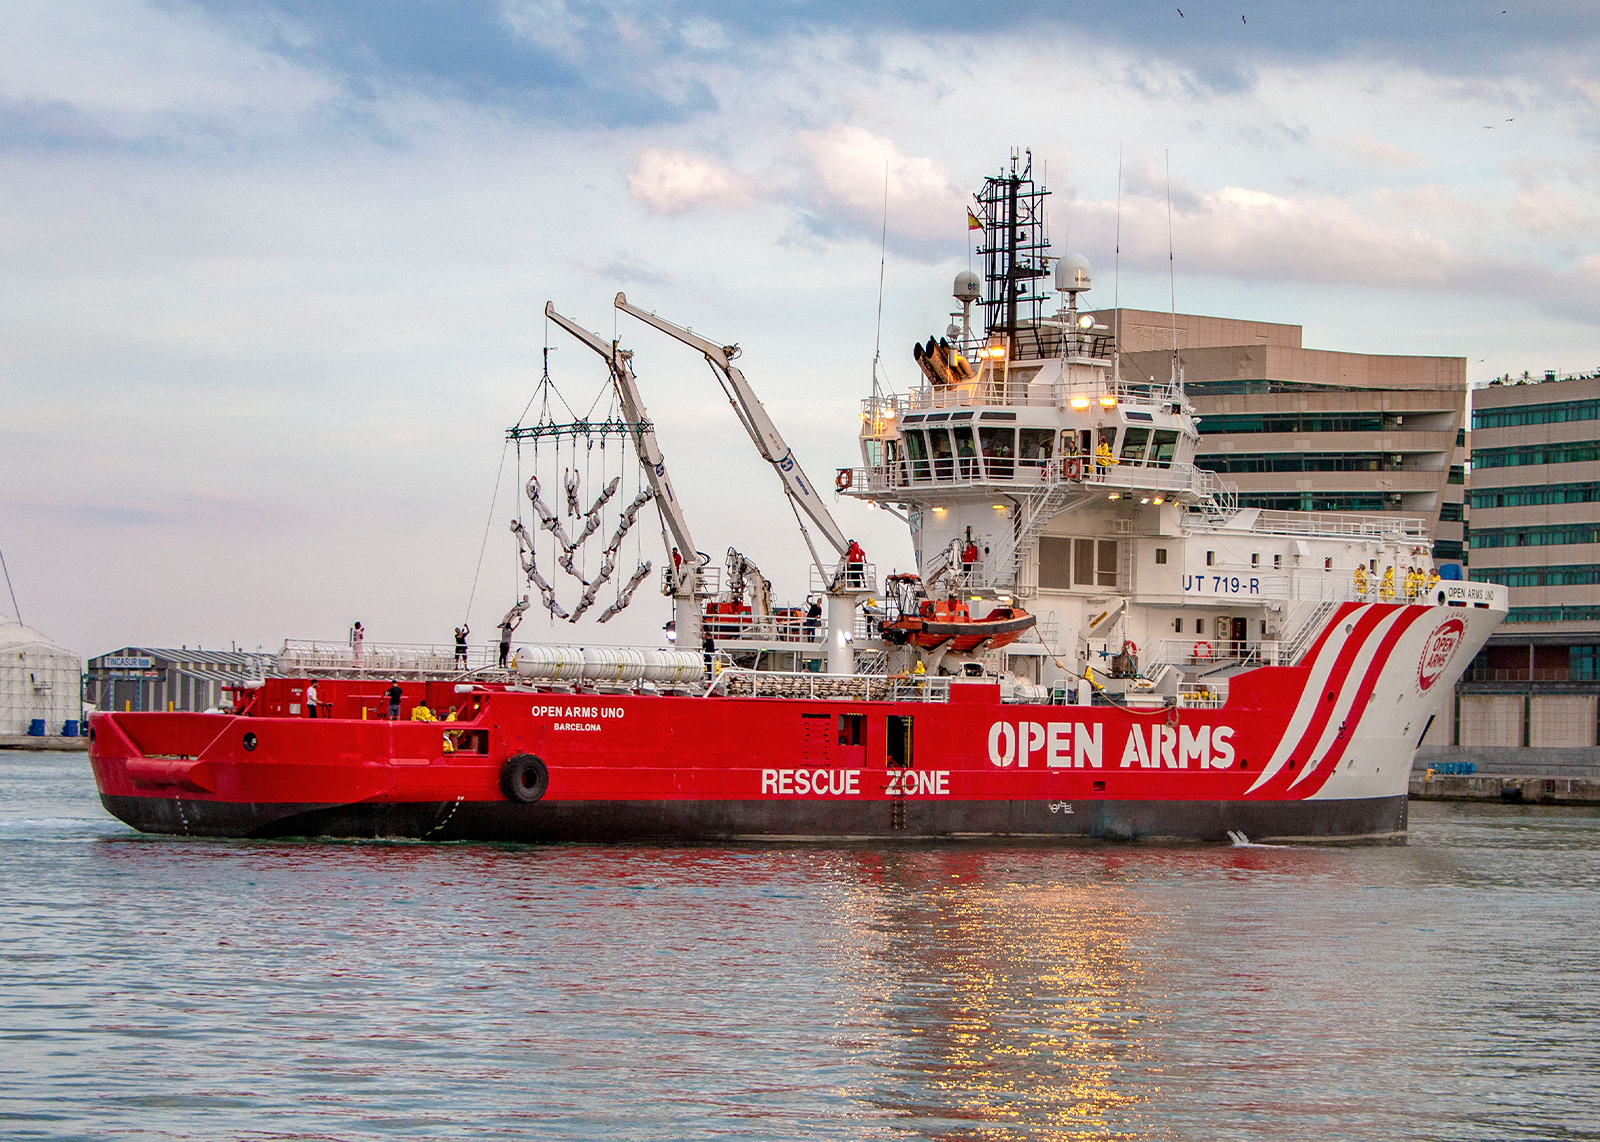 Presentazione ufficiale di Open Arms Uno: la nave umanitaria